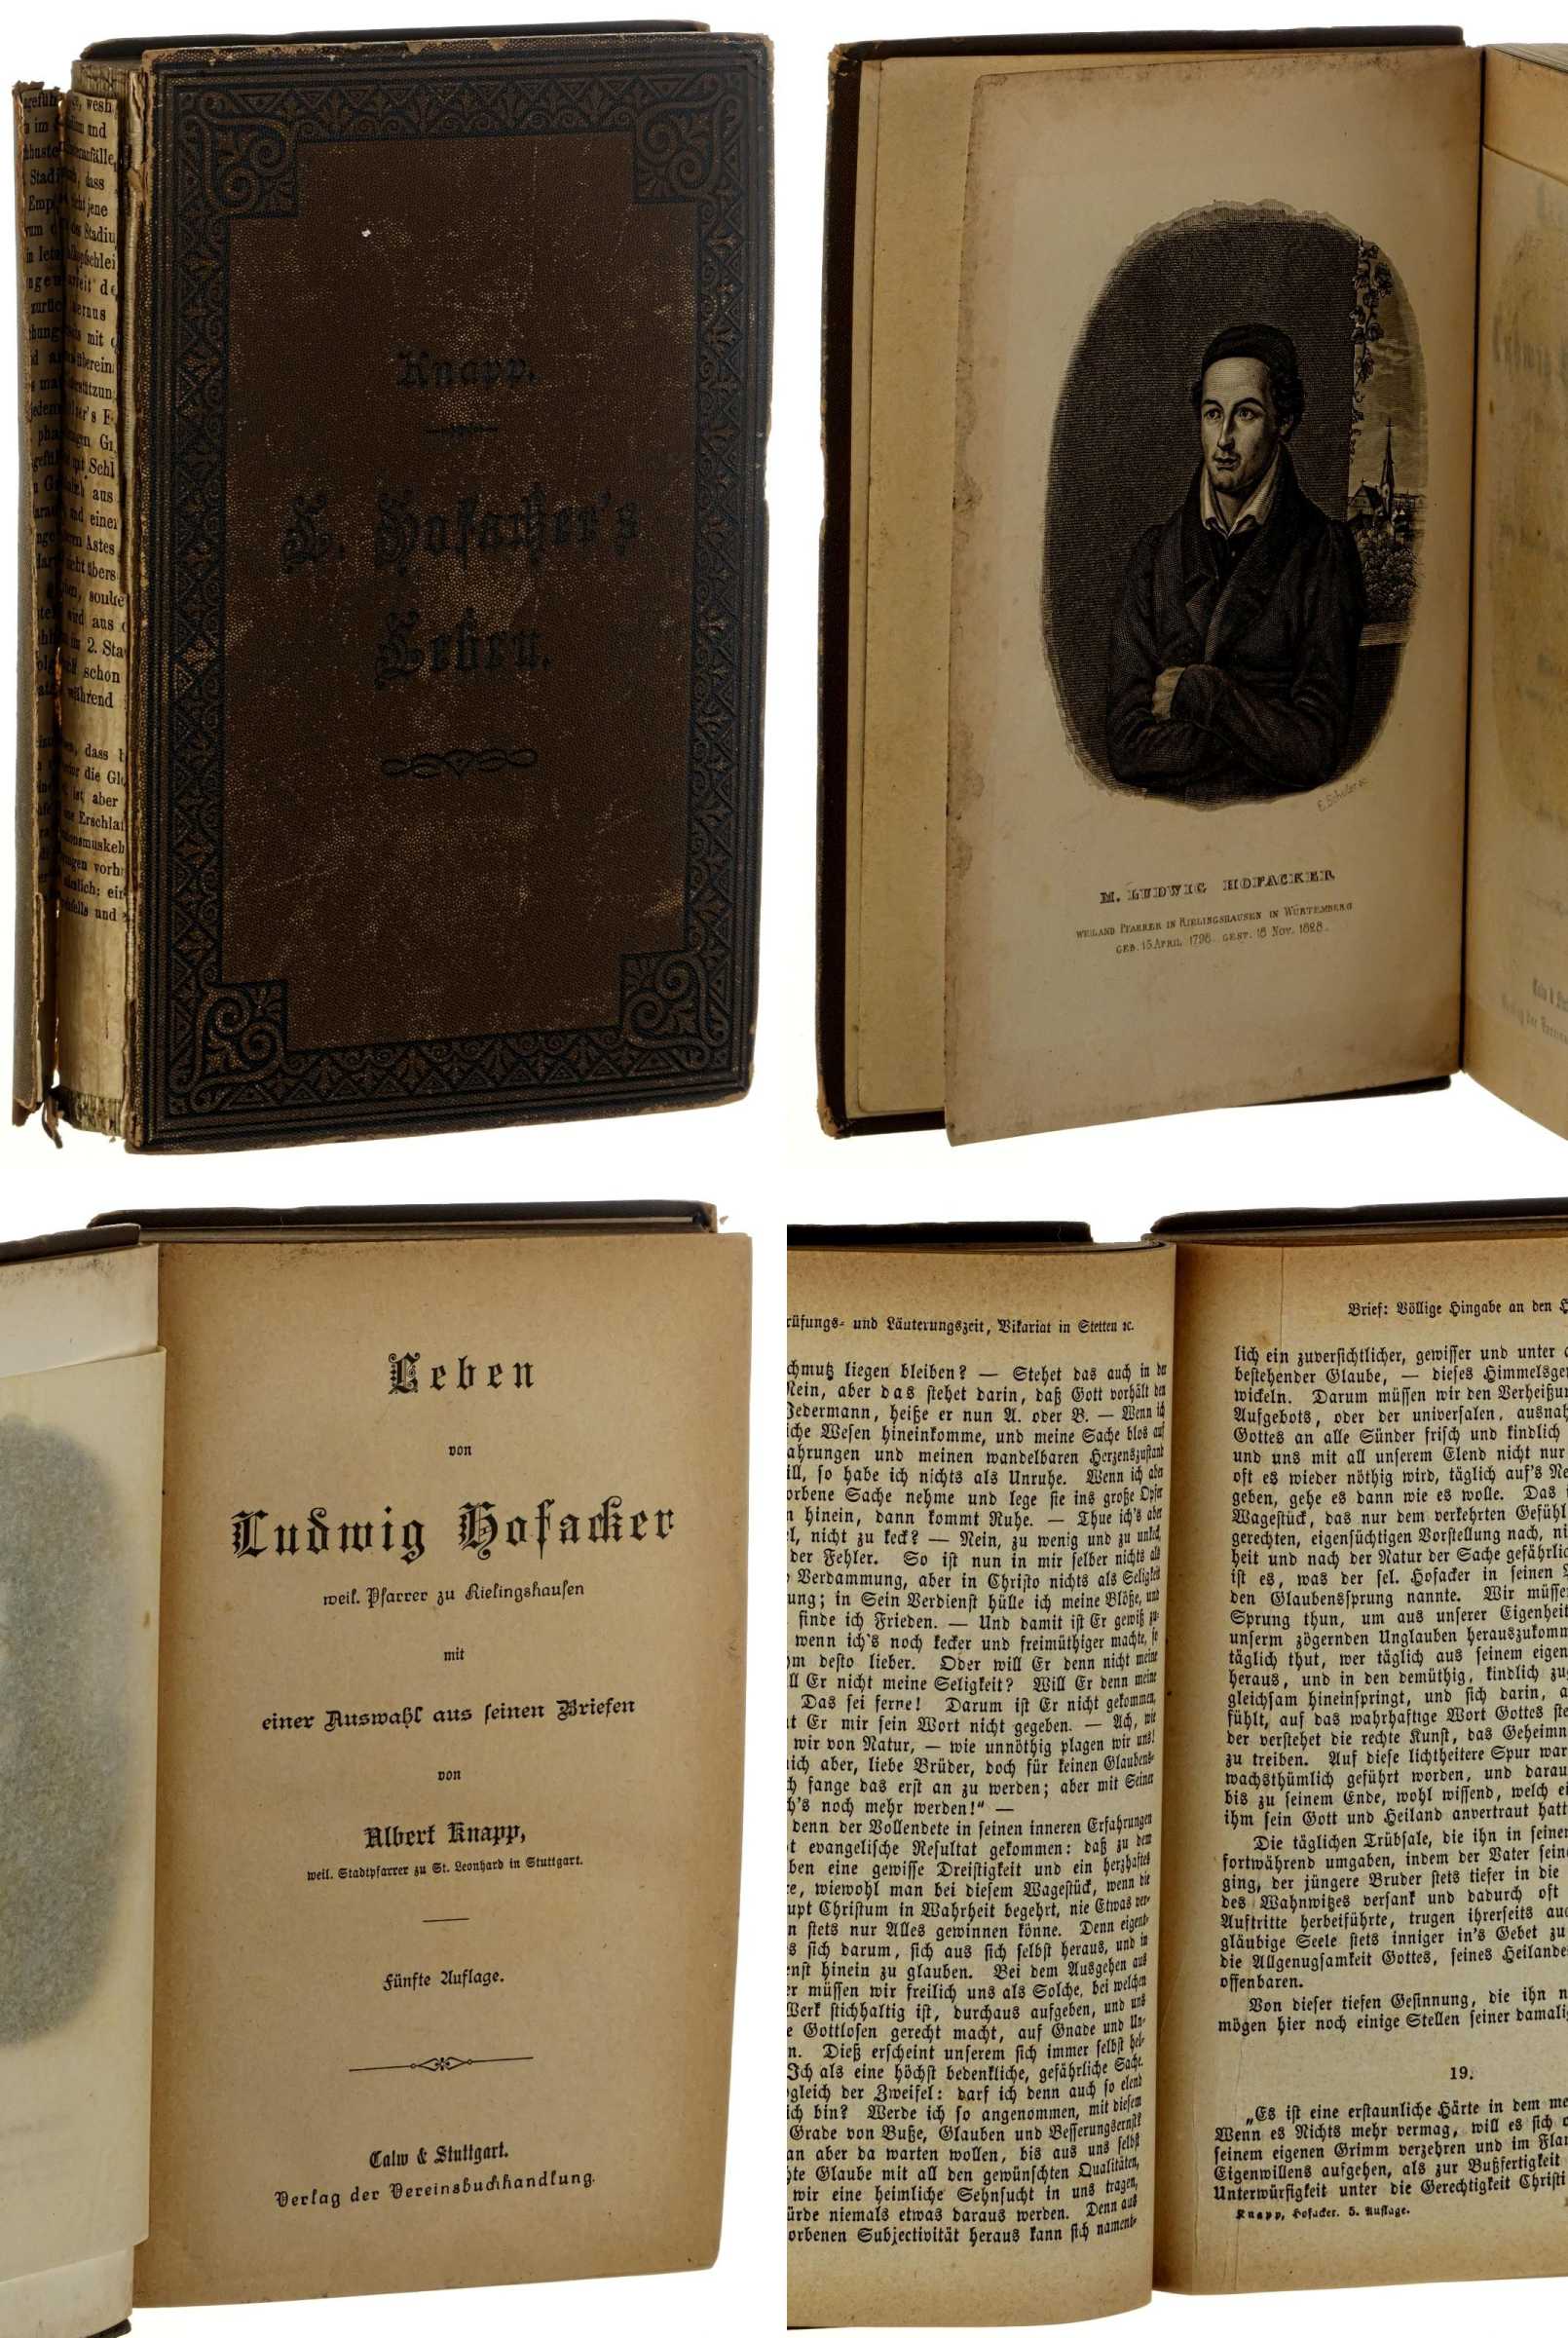 Knapp, Albert:  Leben von Ludwig Hofacker. weil. Pfarrer zu Rielingshausen; mit einer Auswahl aus seinen Briefen. 